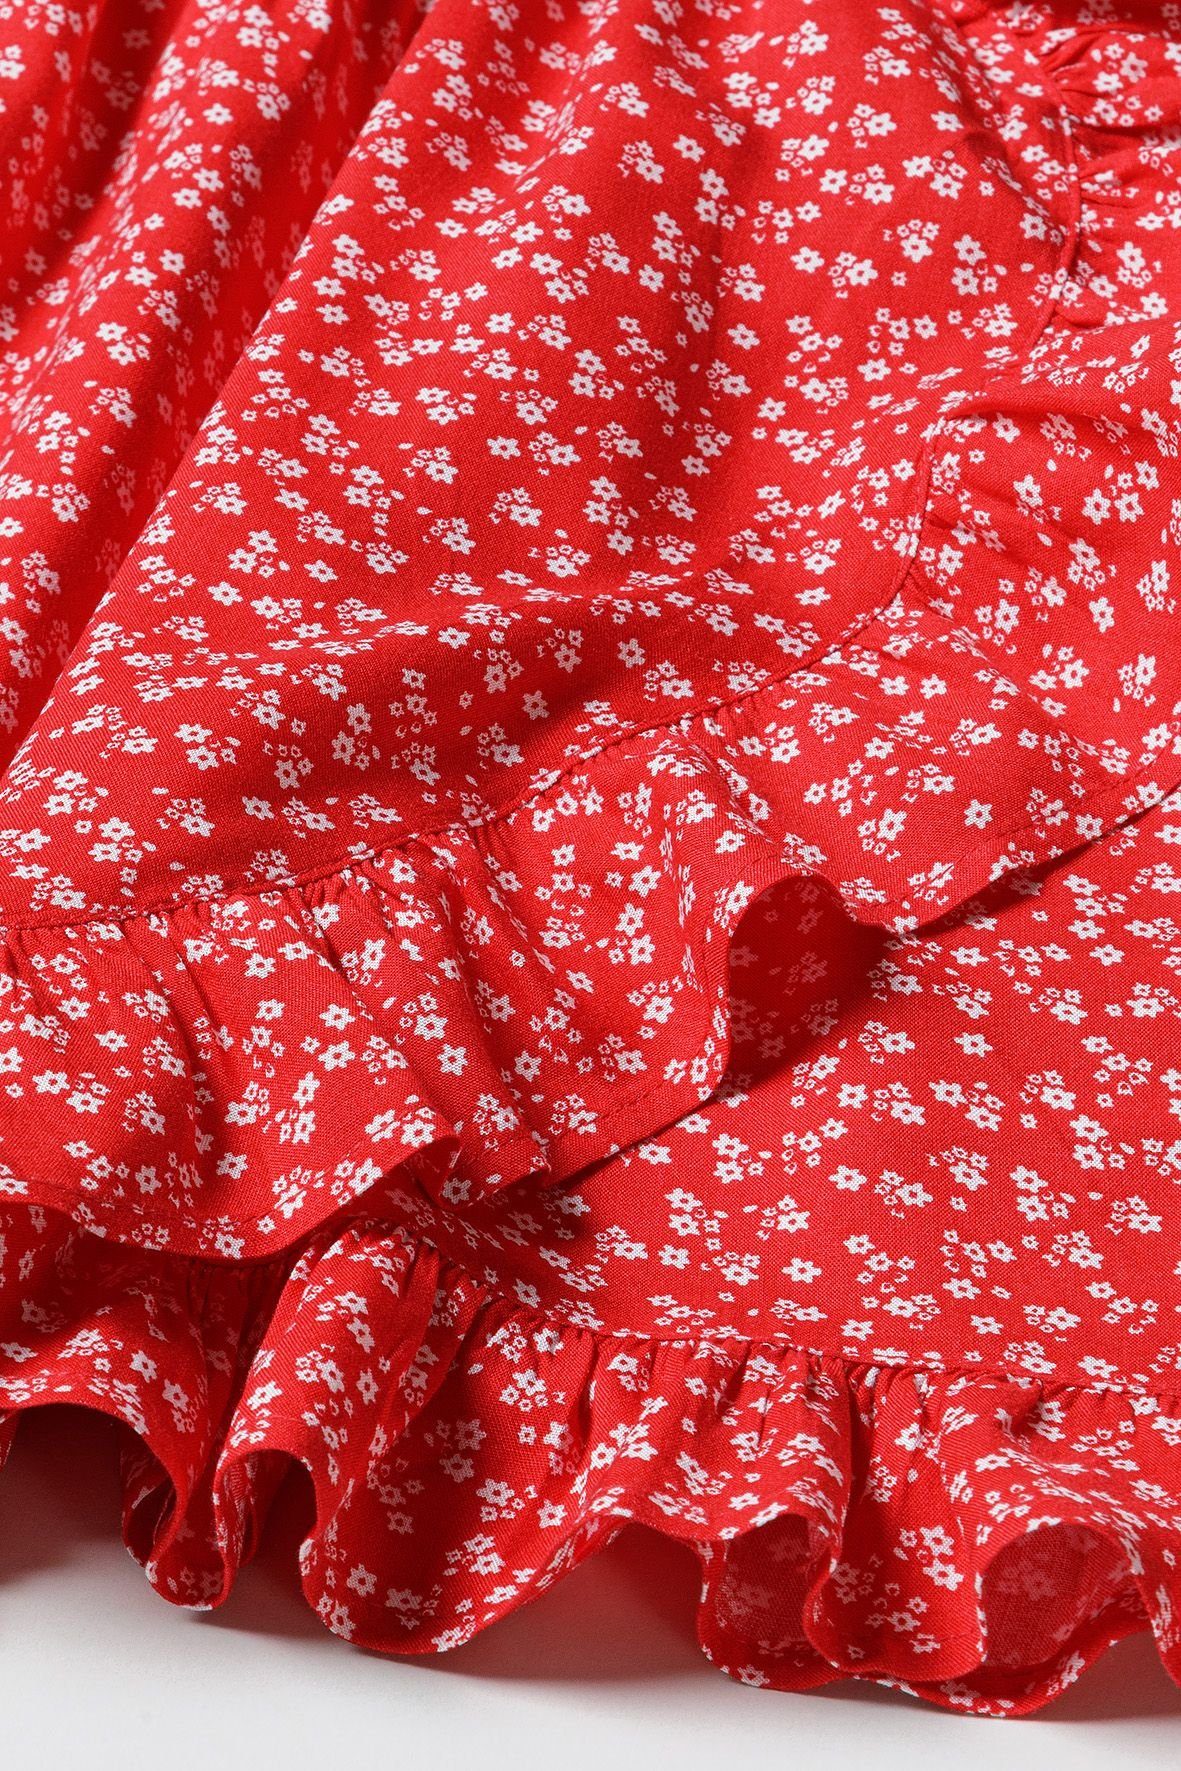 MINOTI Wickelkleid Sommerkleid (3y-14y) Rot